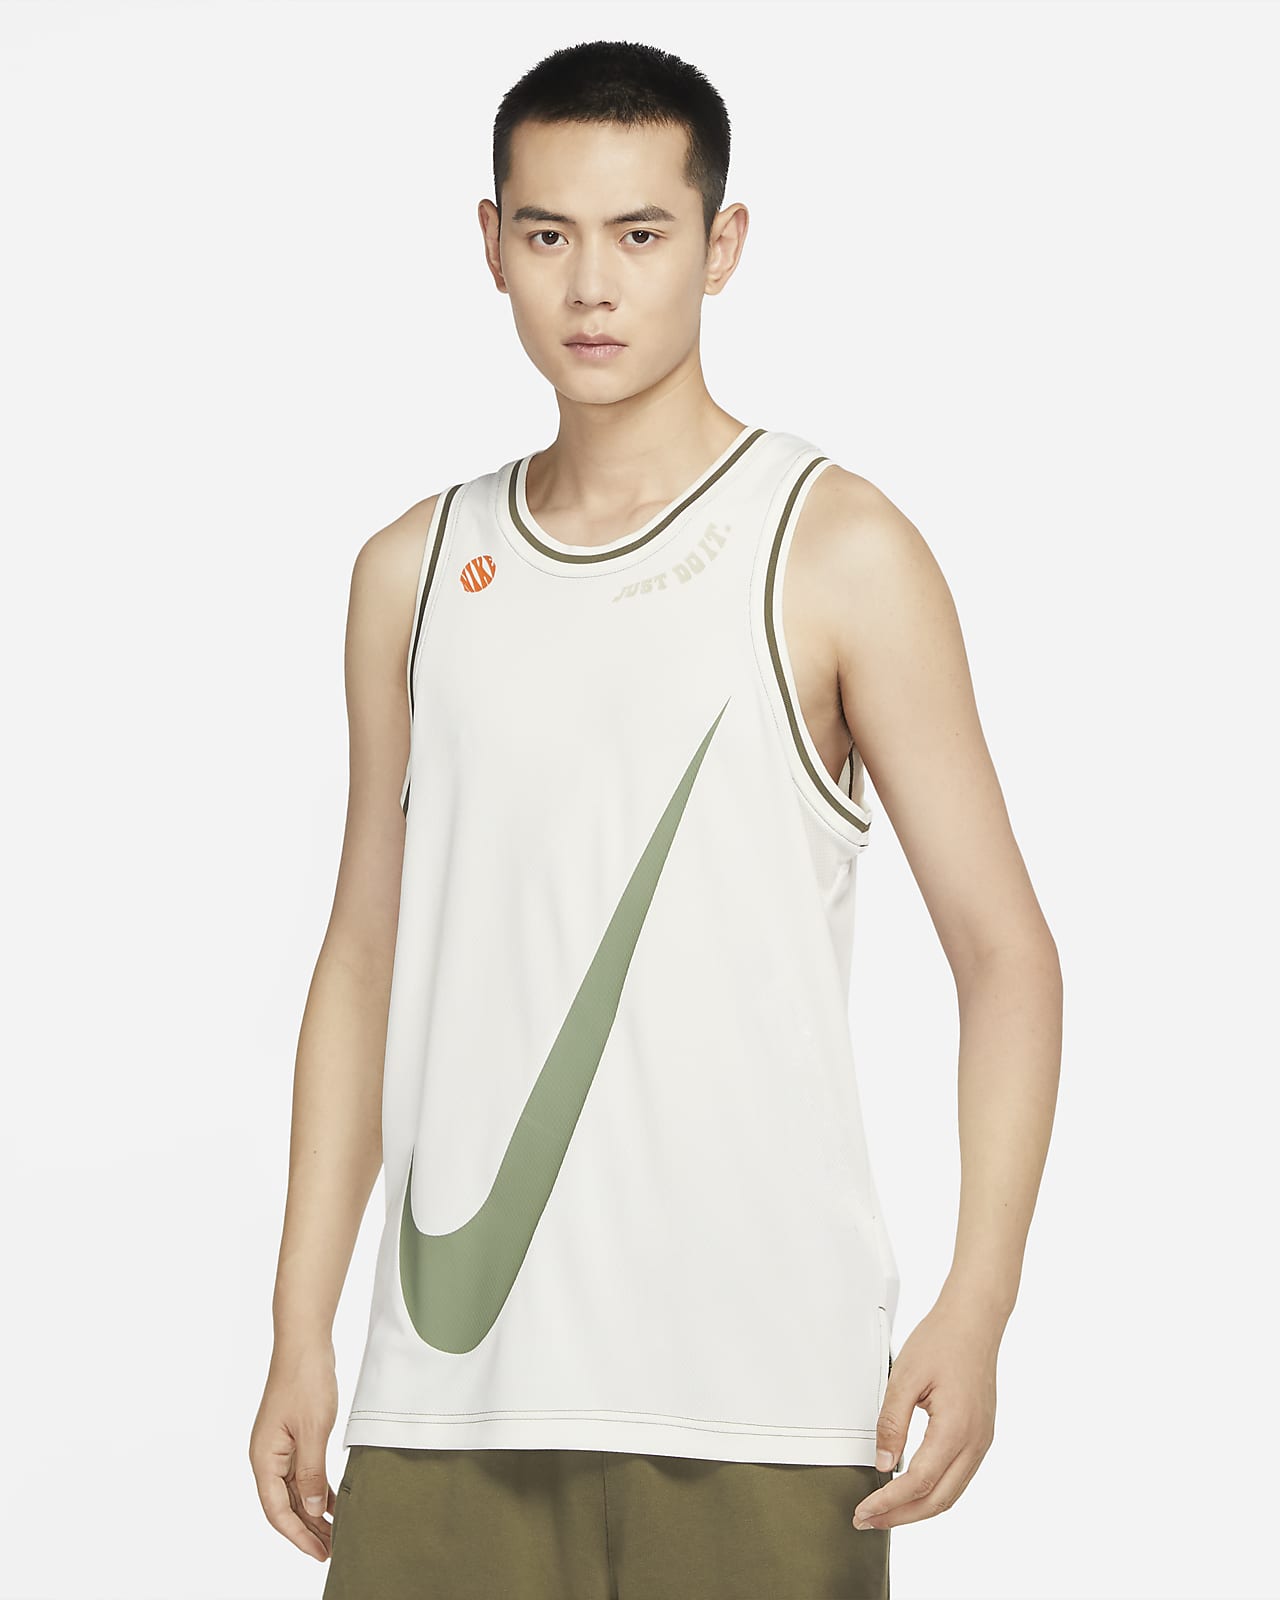 Nike Dri-FIT DNA 男子篮球球衣